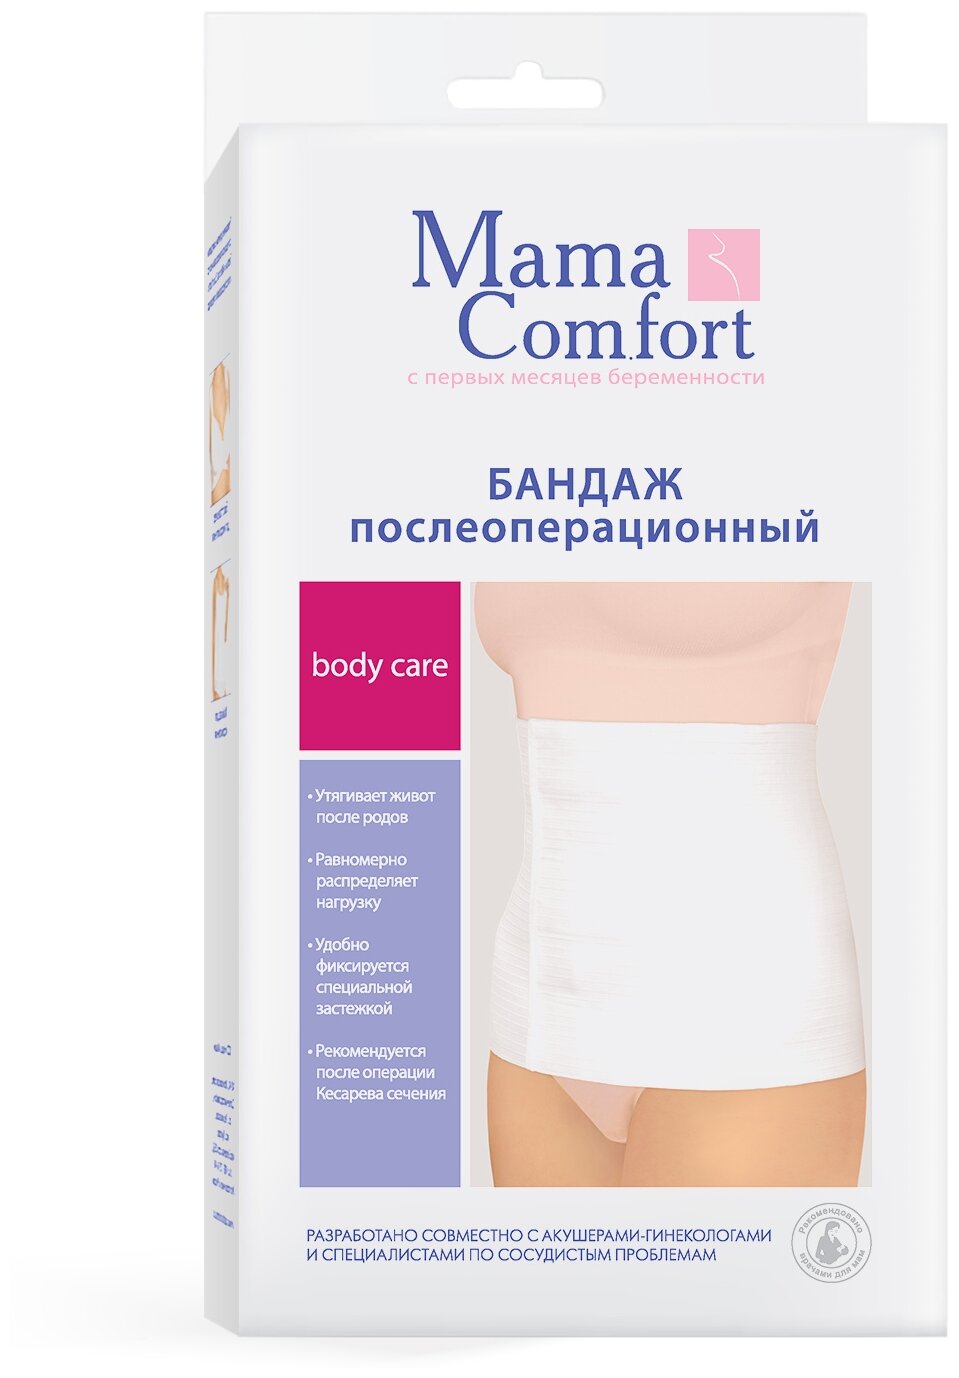 Бандаж Mama Comfort послеоперационный Эффект Наша мама - фото №4